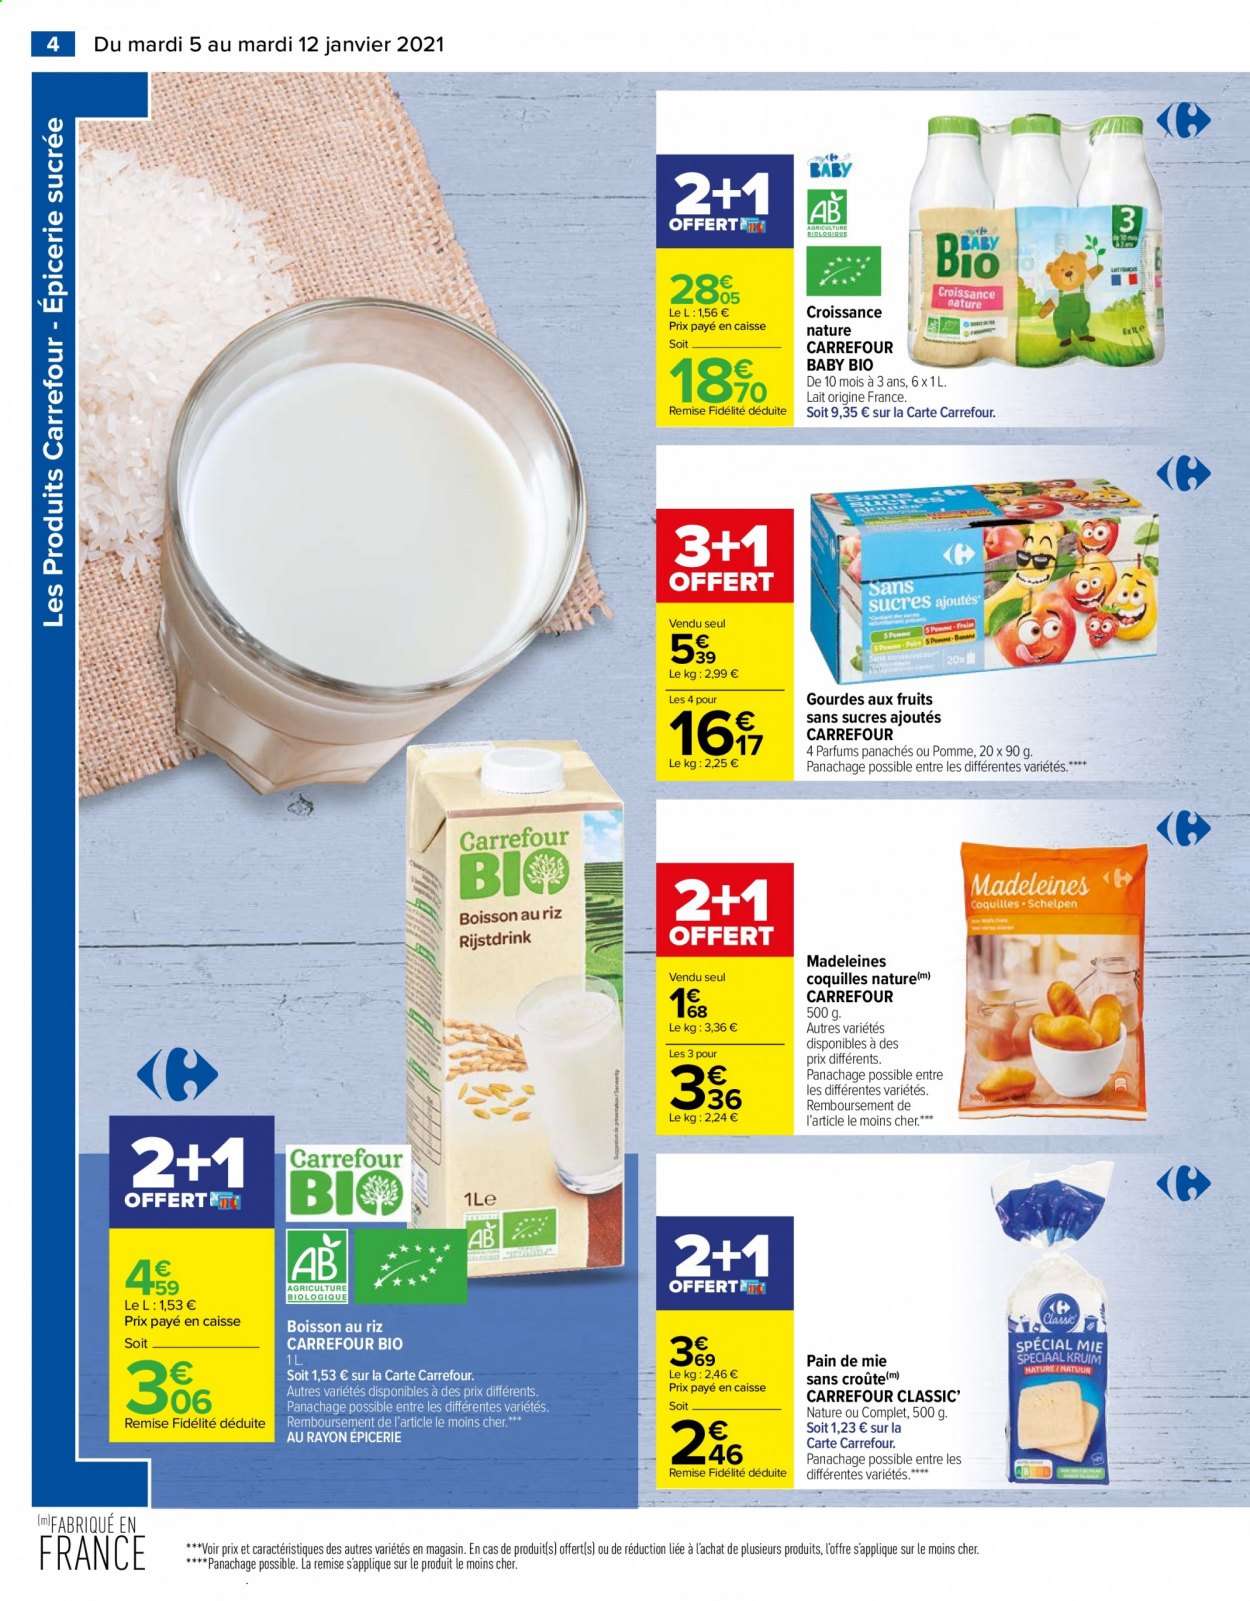 thumbnail - Catalogue Carrefour Hypermarchés - 05/01/2021 - 12/01/2021 - Produits soldés - gourde, pain, pain de mie, madeleines, lait, gourdes aux fruits. Page 4.